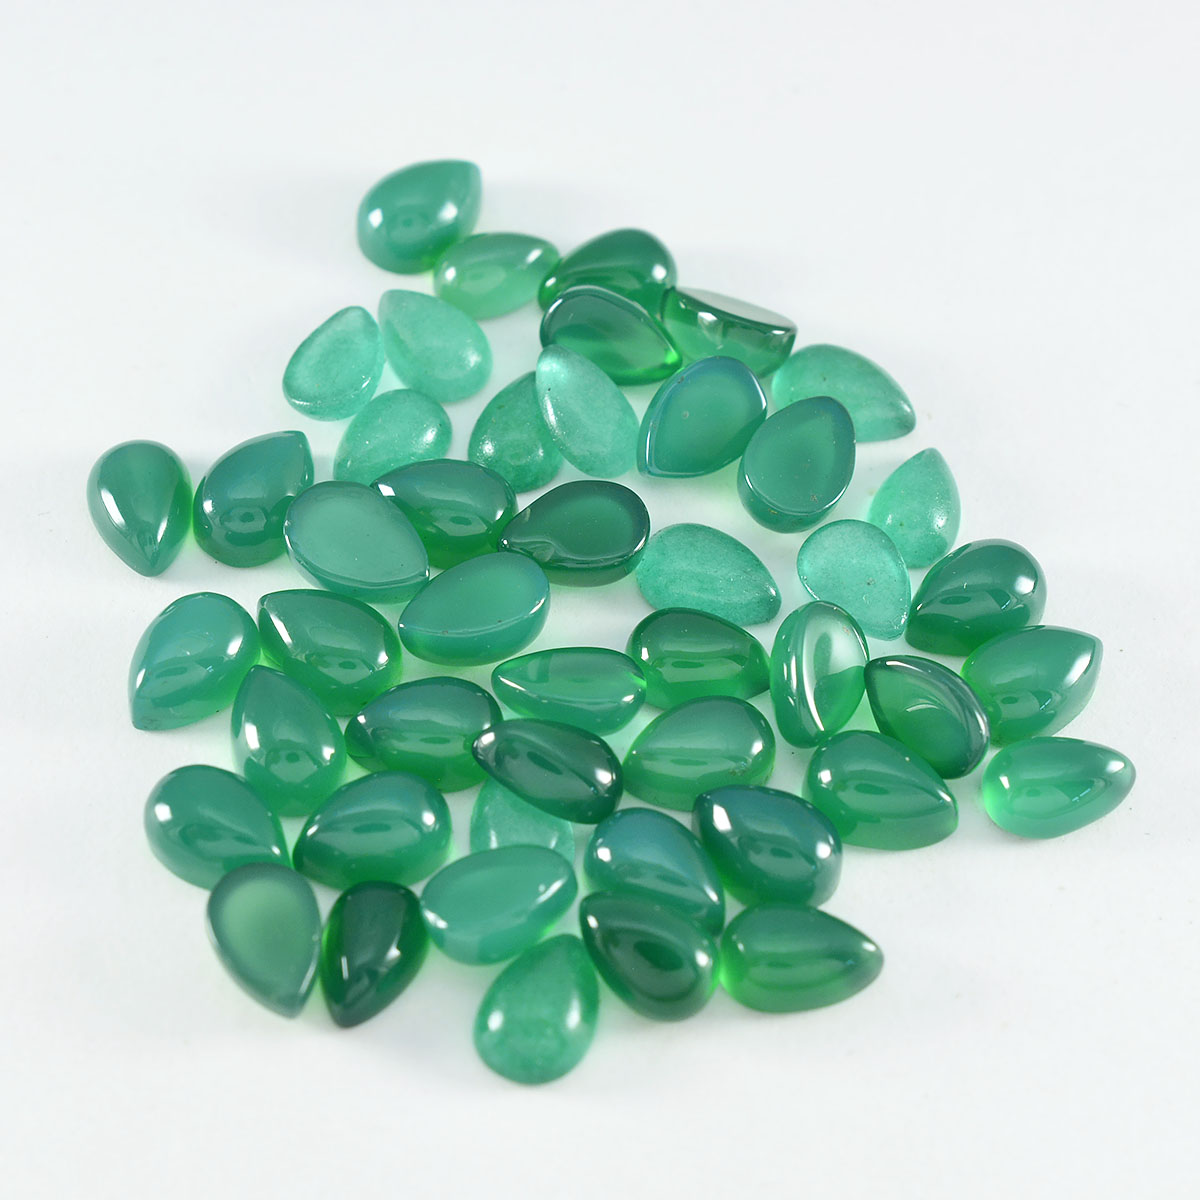 riyogems 1 шт. зеленый оникс кабошон 5x7 мм грушевидной формы, красивые качественные драгоценные камни